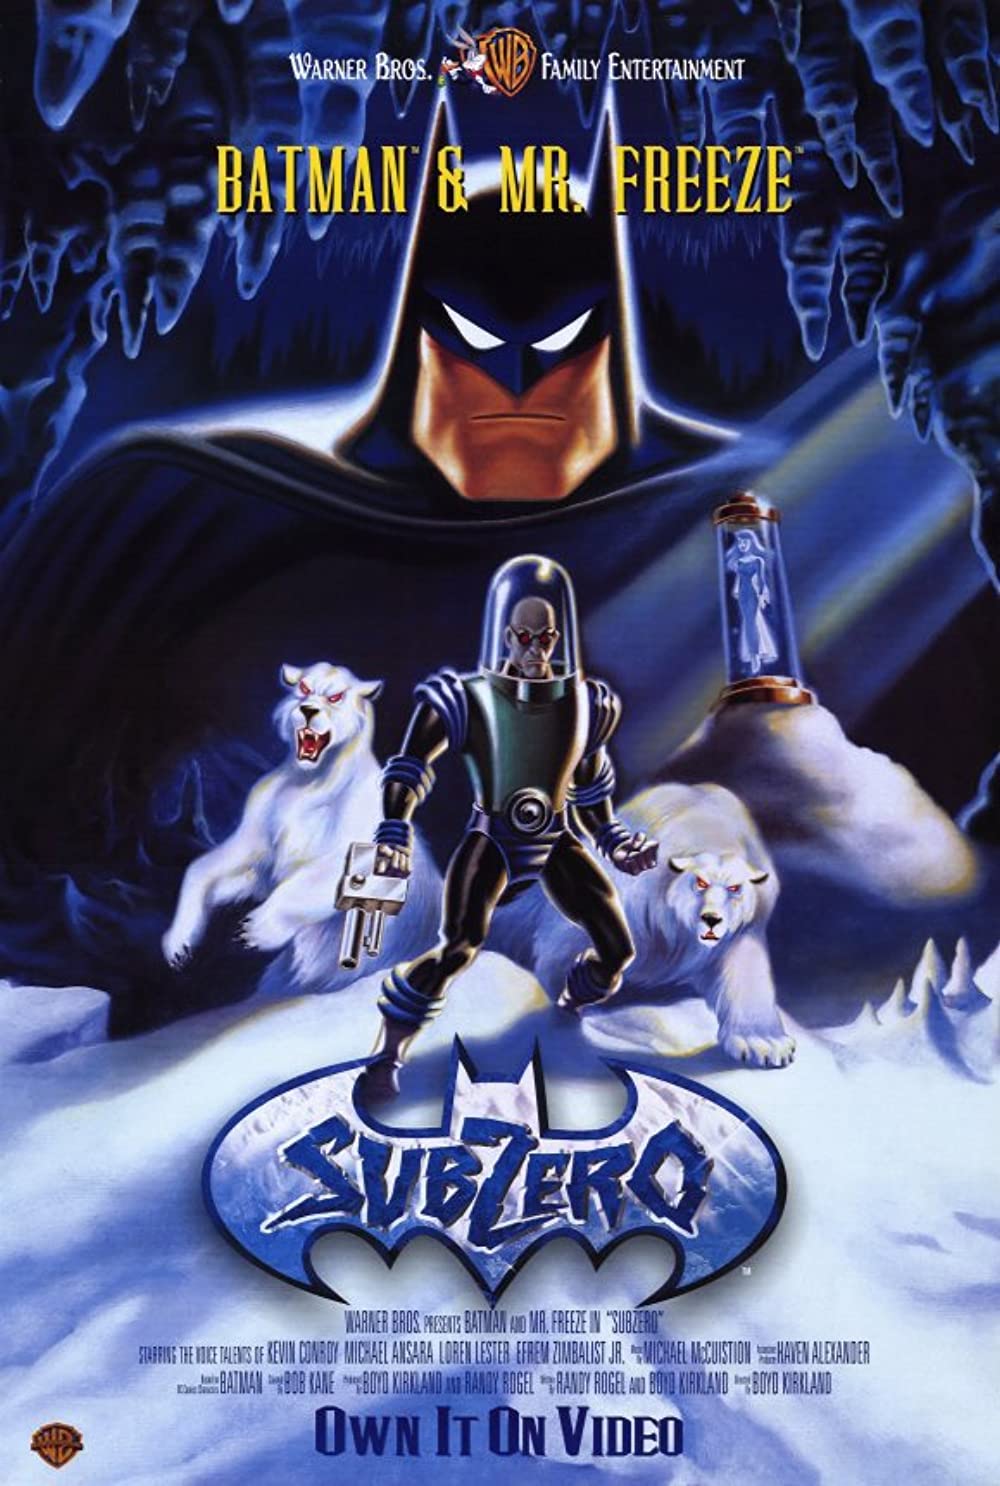 ดูหนังออนไลน์ฟรี Batman & Mr. Freeze SubZero (1998) แบทแมน & มิสเตอร์ เฟรส ซับซีโร่